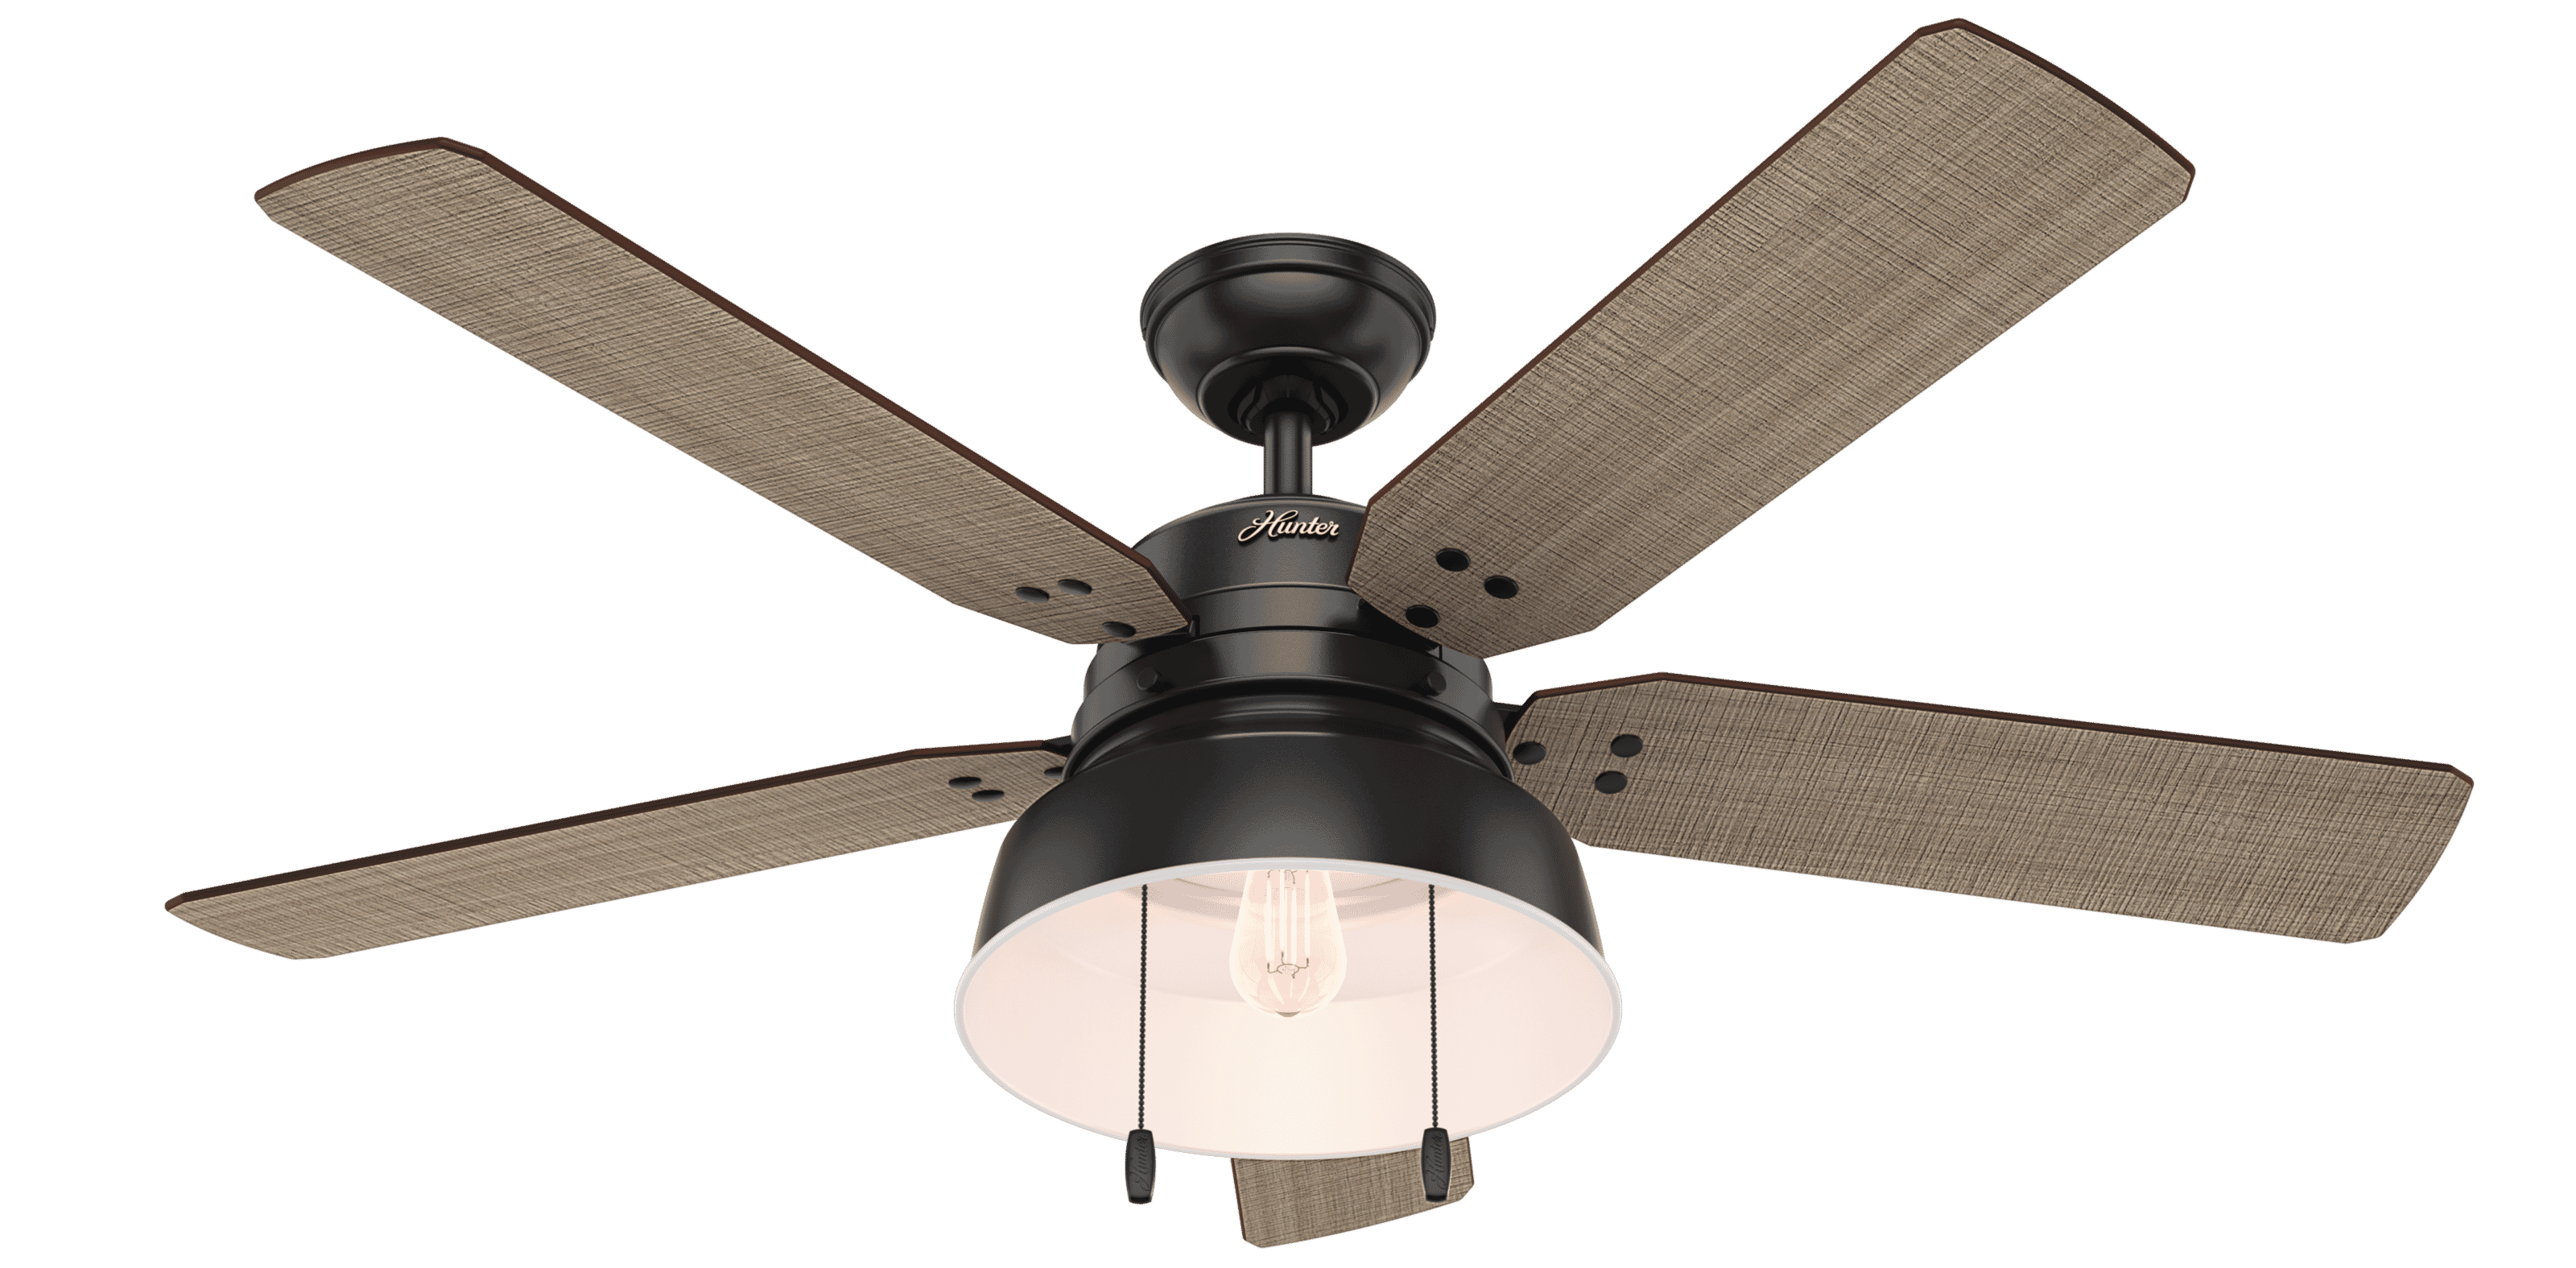 Hunter Mill Valley 52"" Indoor/Outdoor Ceiling Fan in Matte Black -  59307